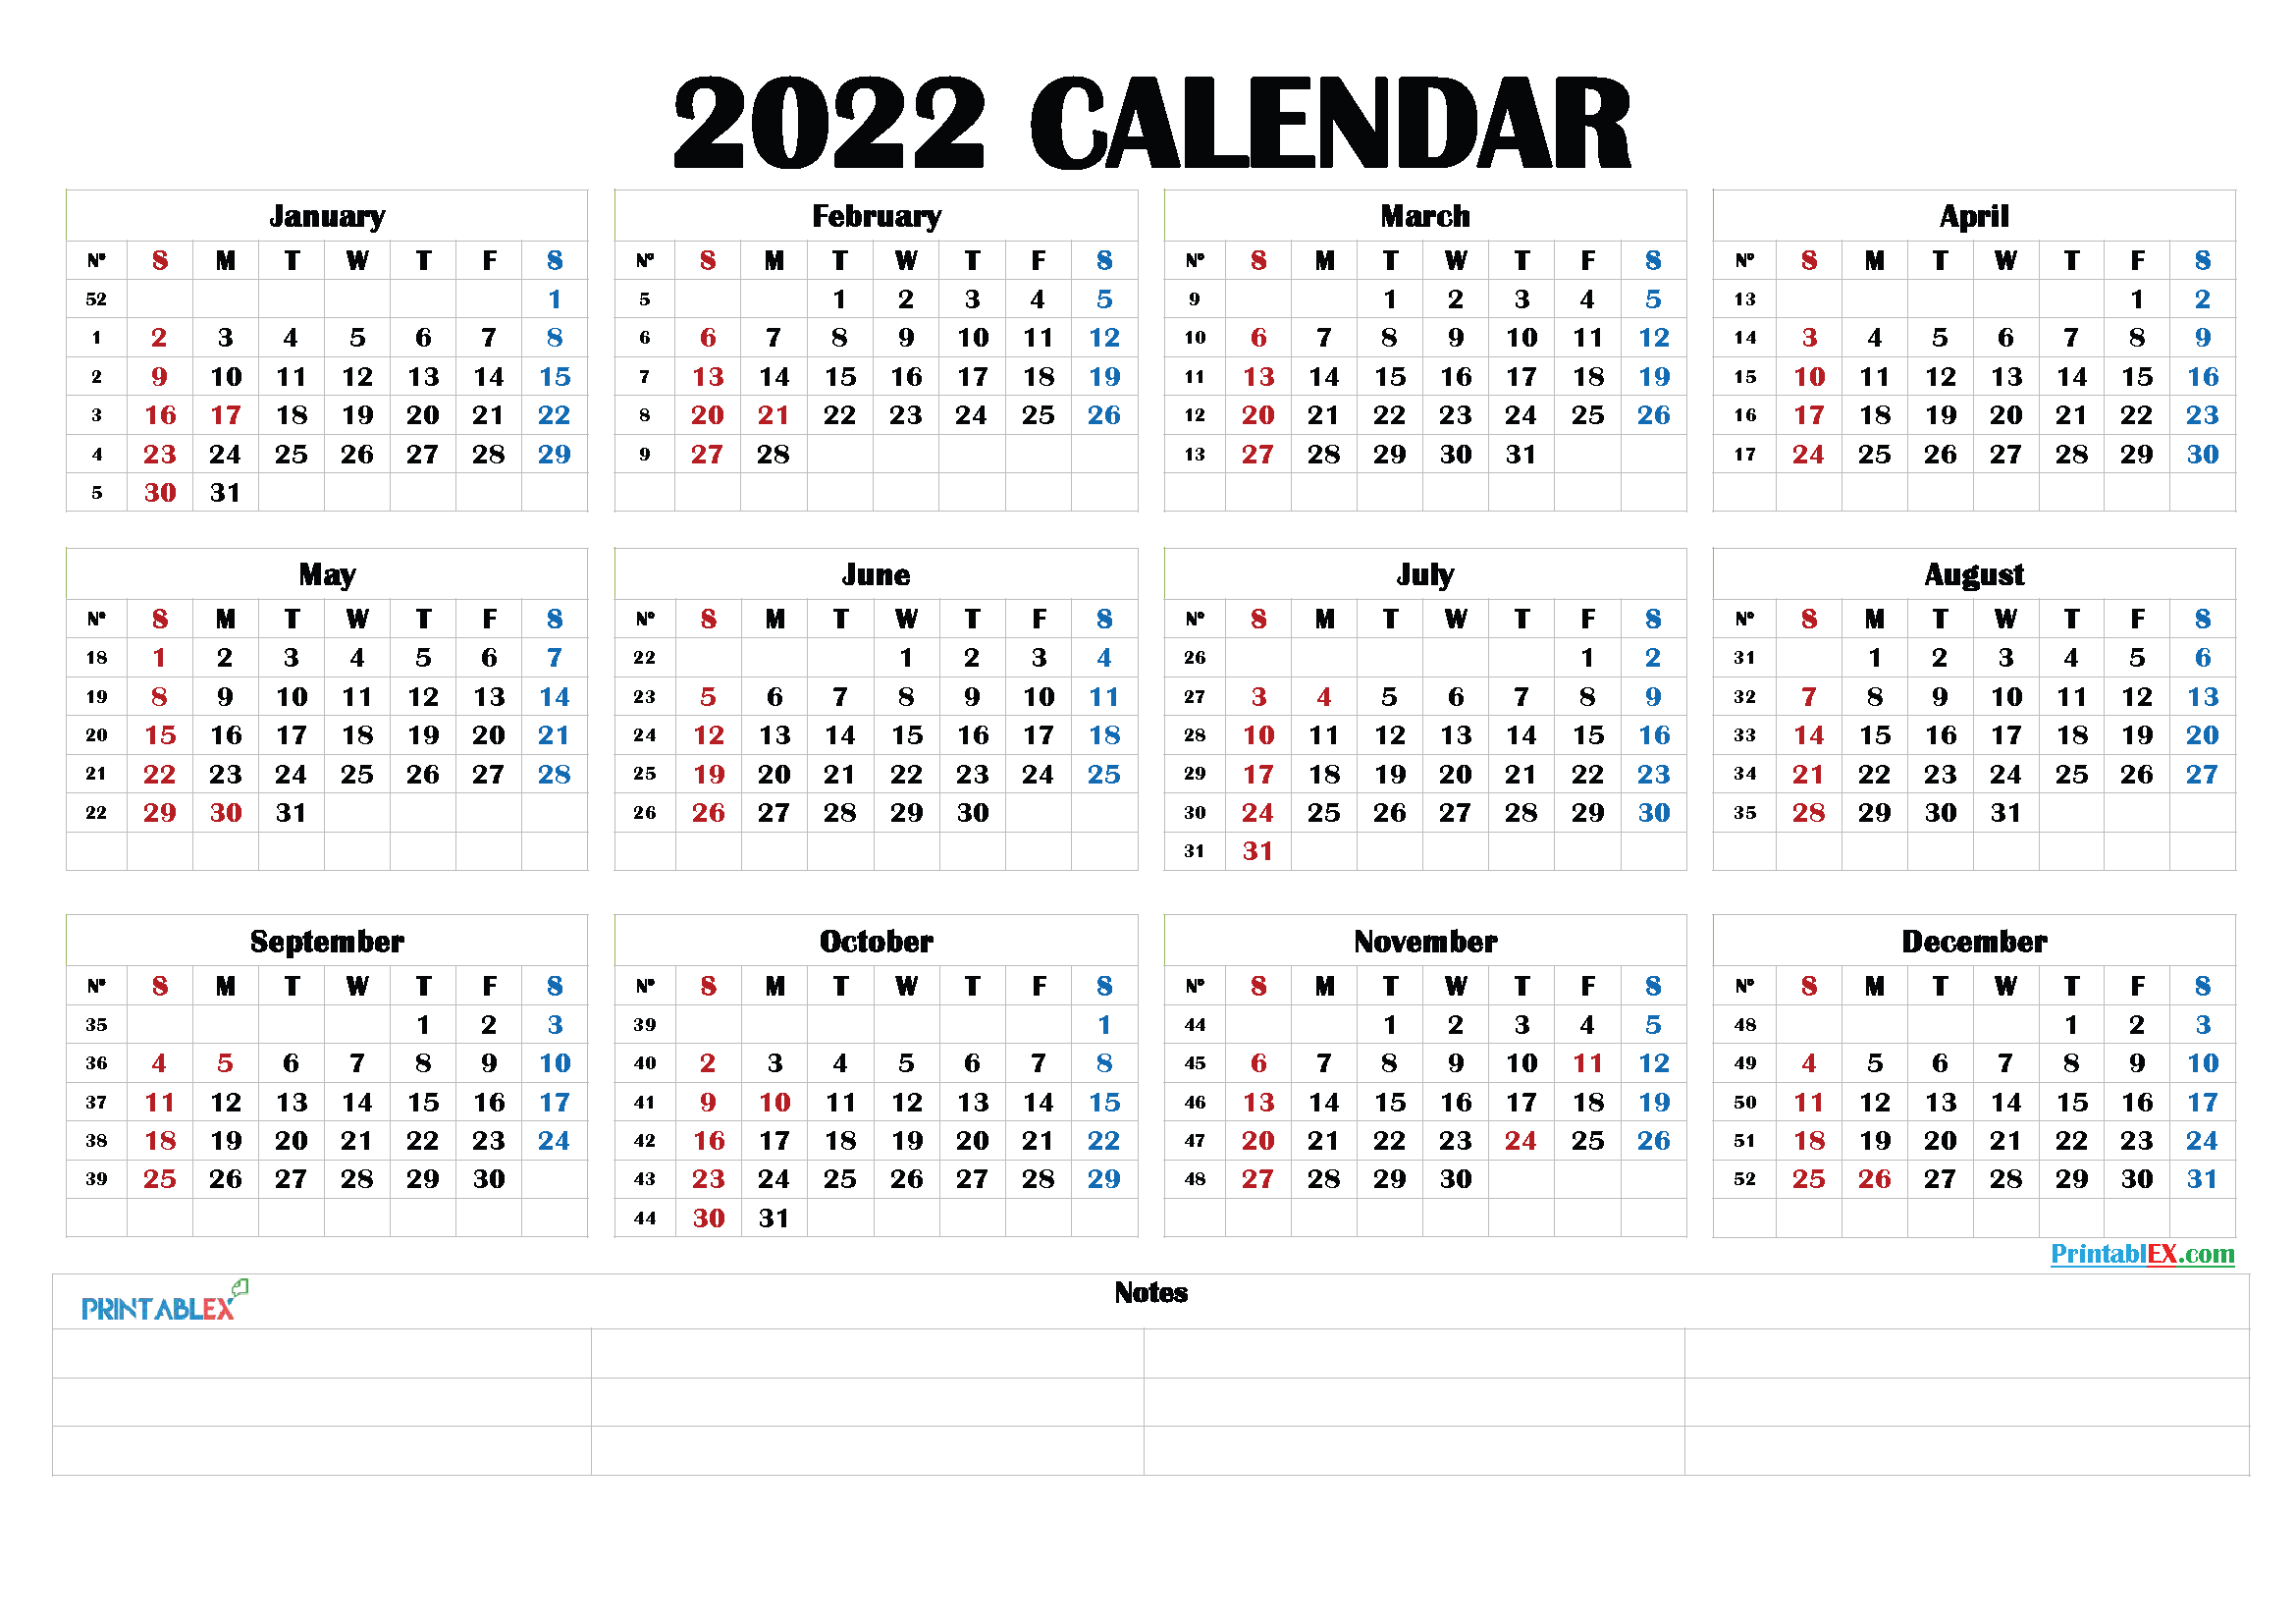 Free Printable 2022 Calendar By Month 22ytw190